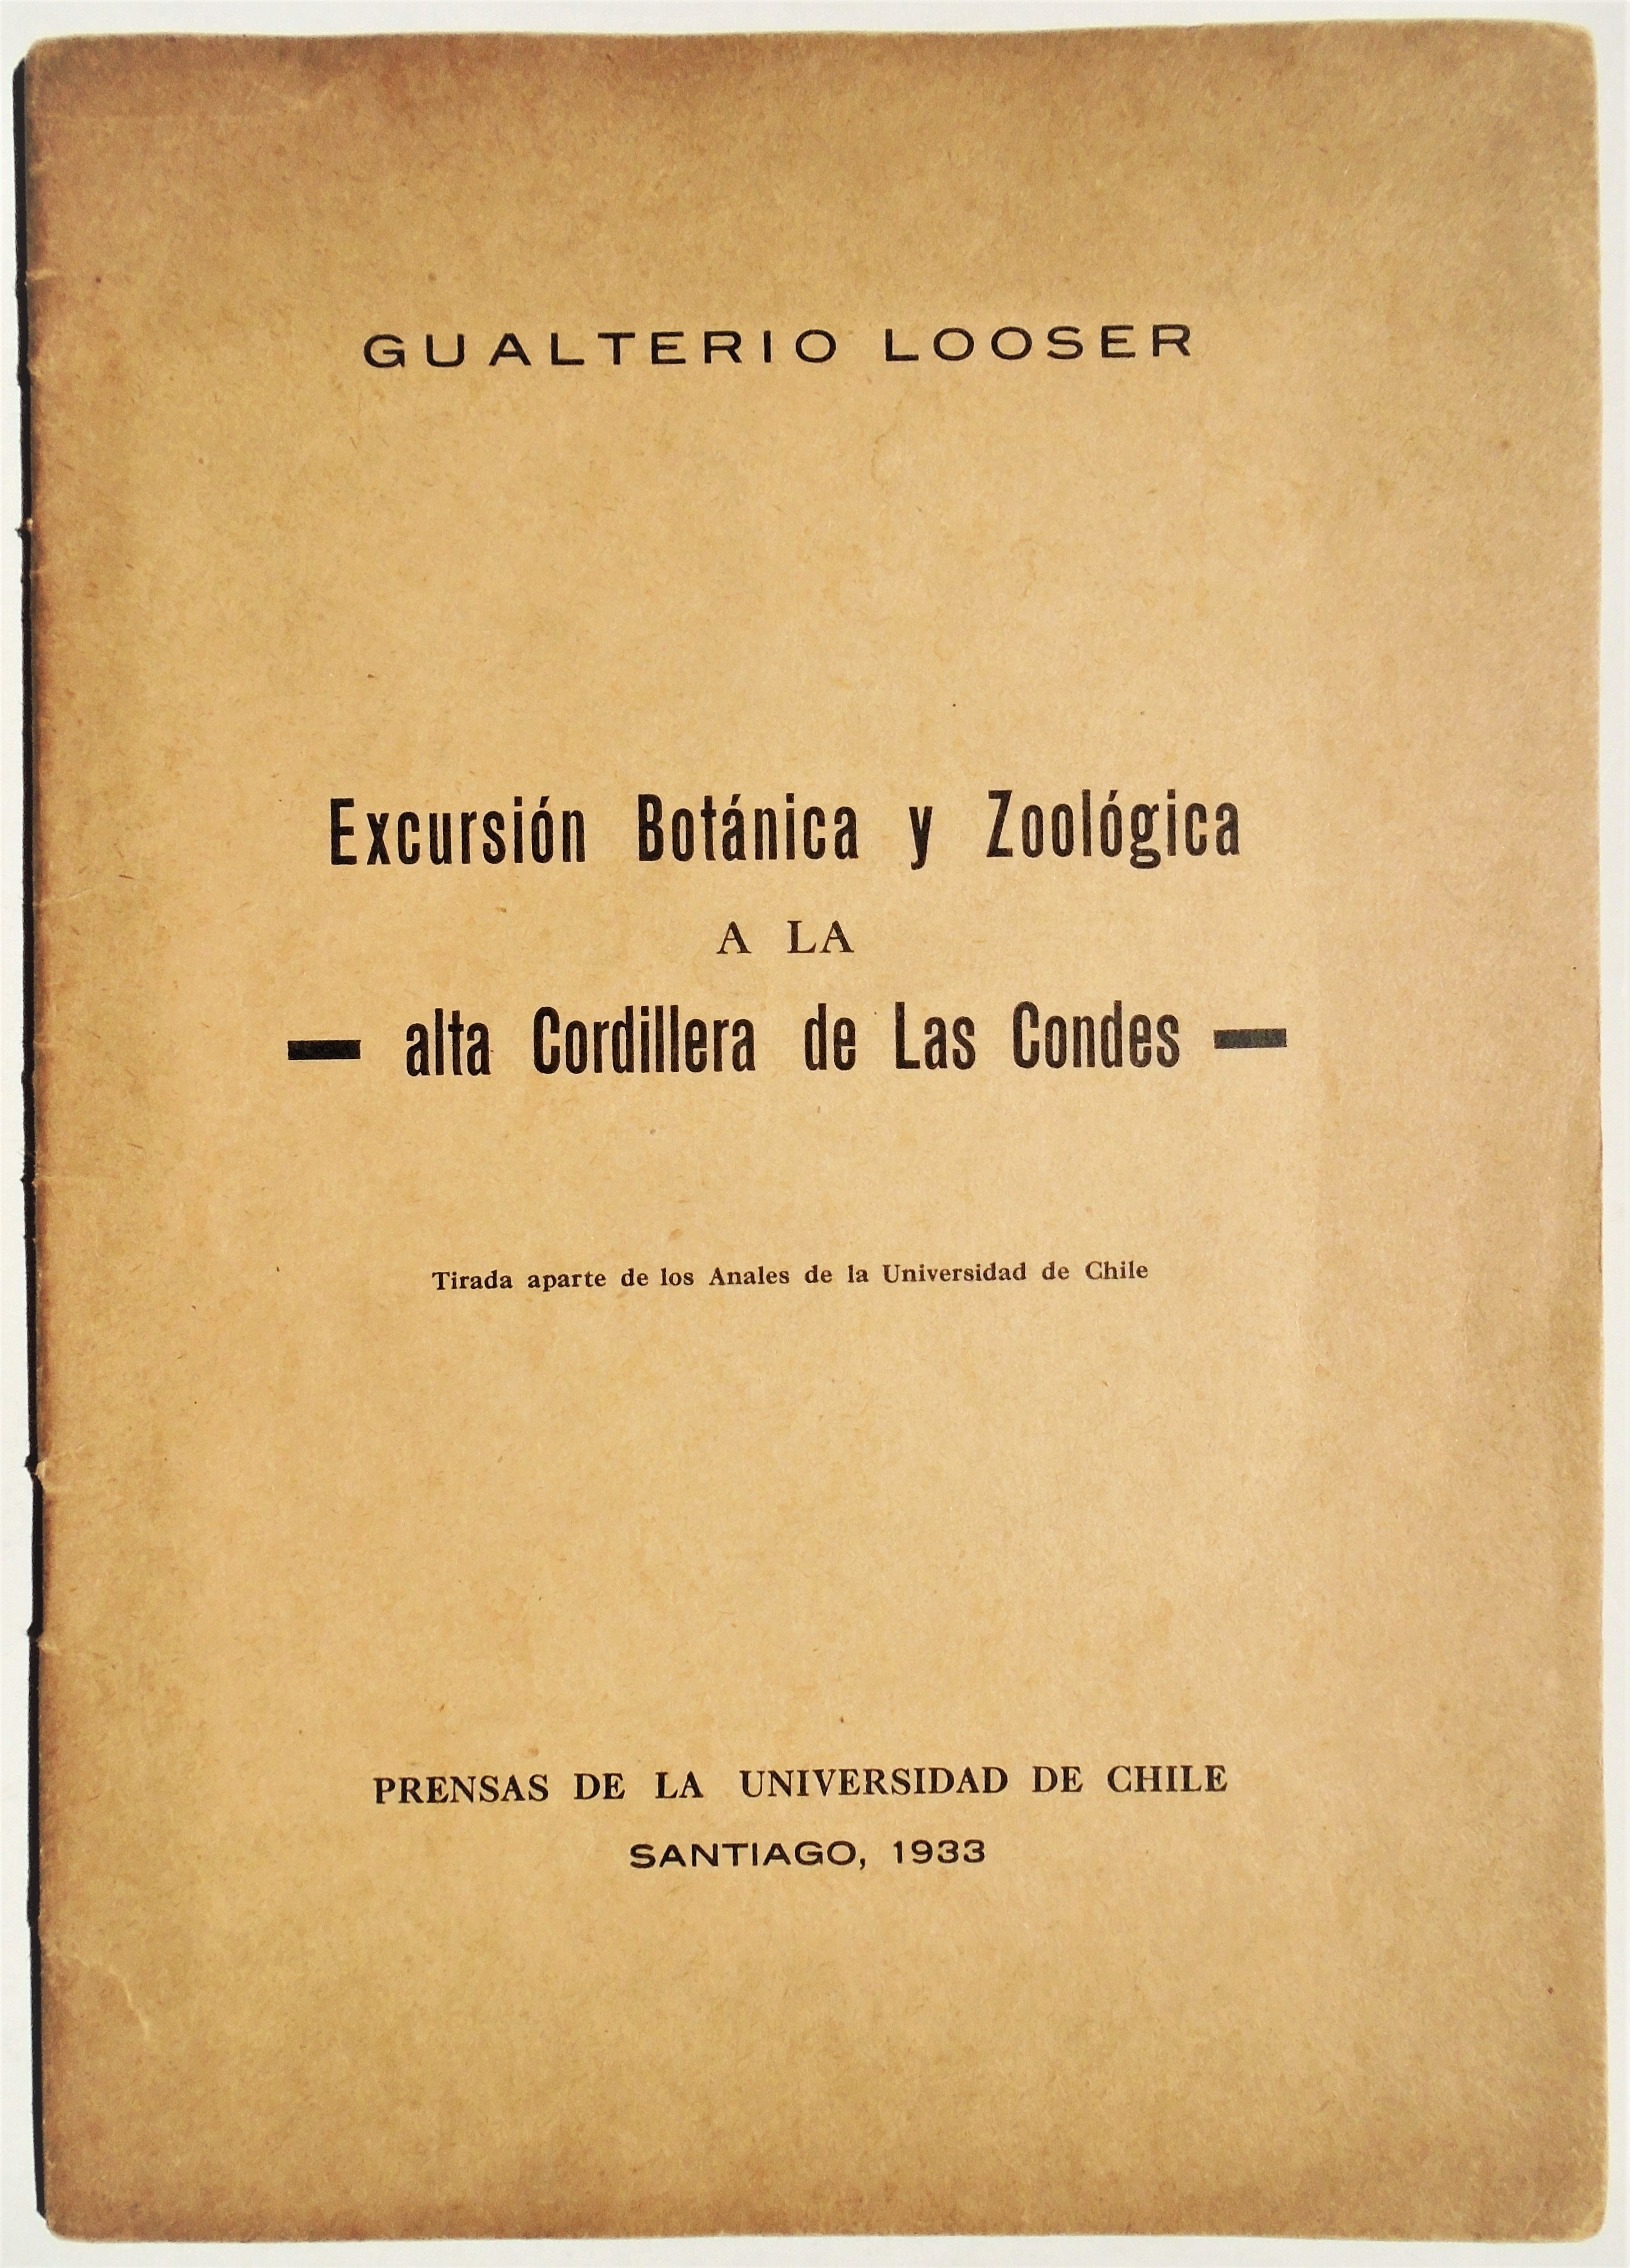 Gualterio Looser - Excursión botánica y zoológica a la alta Cordillera de Las Condes